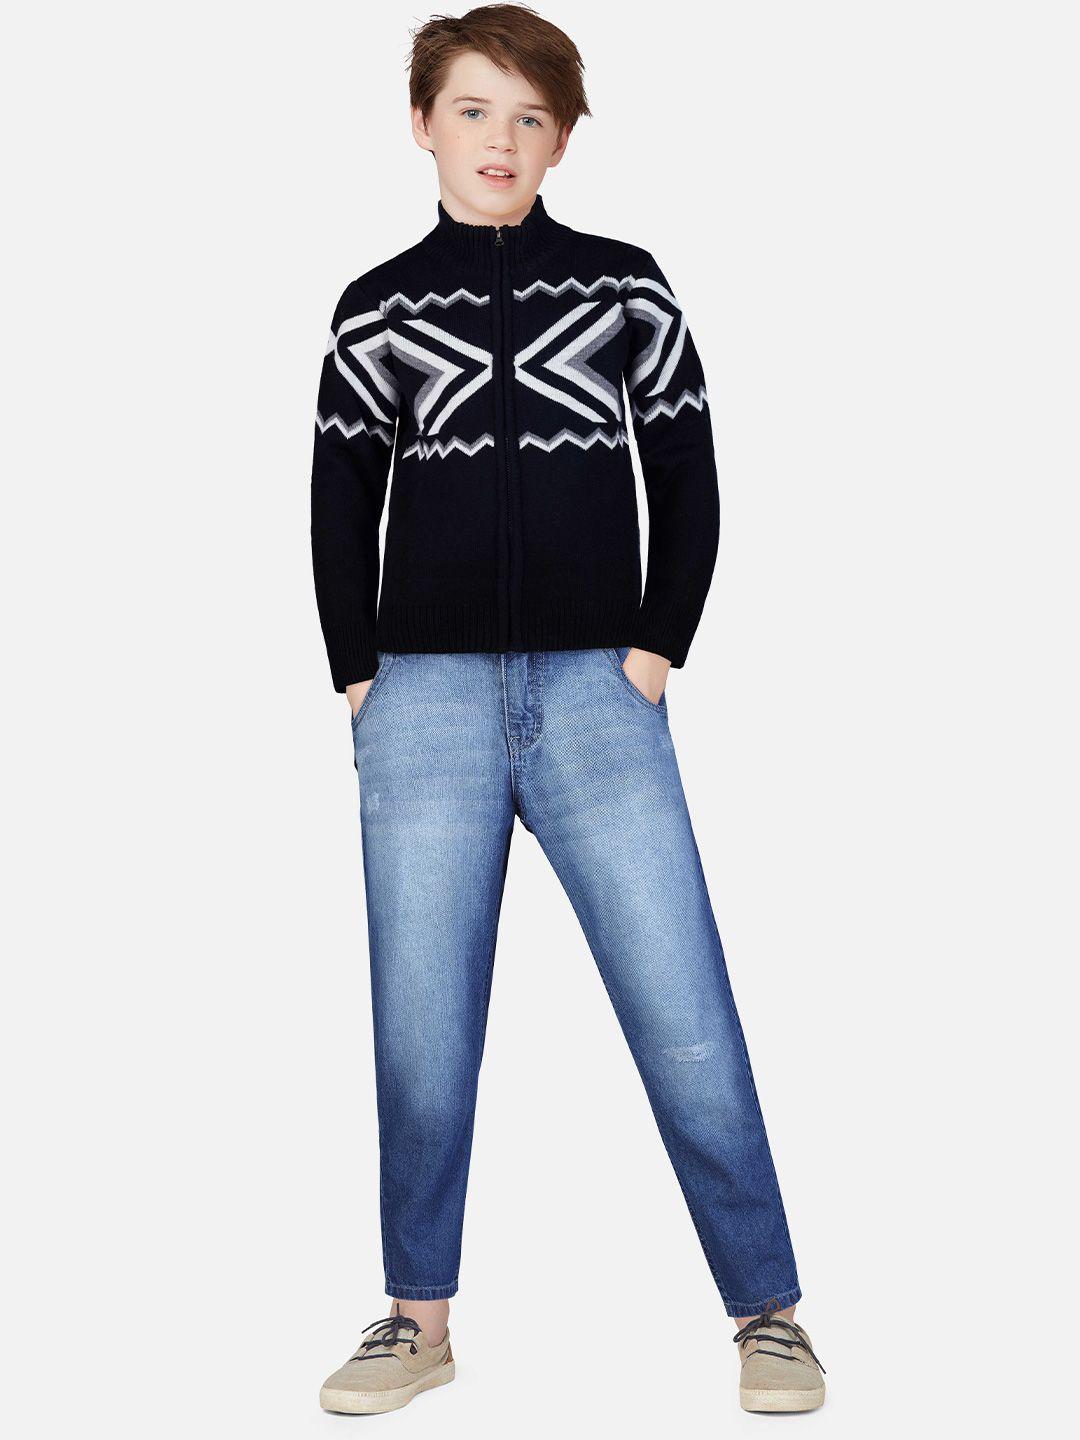 gini-and-jony-boys-geometric-printed-turtle-neck-cardigan-wool-sweater